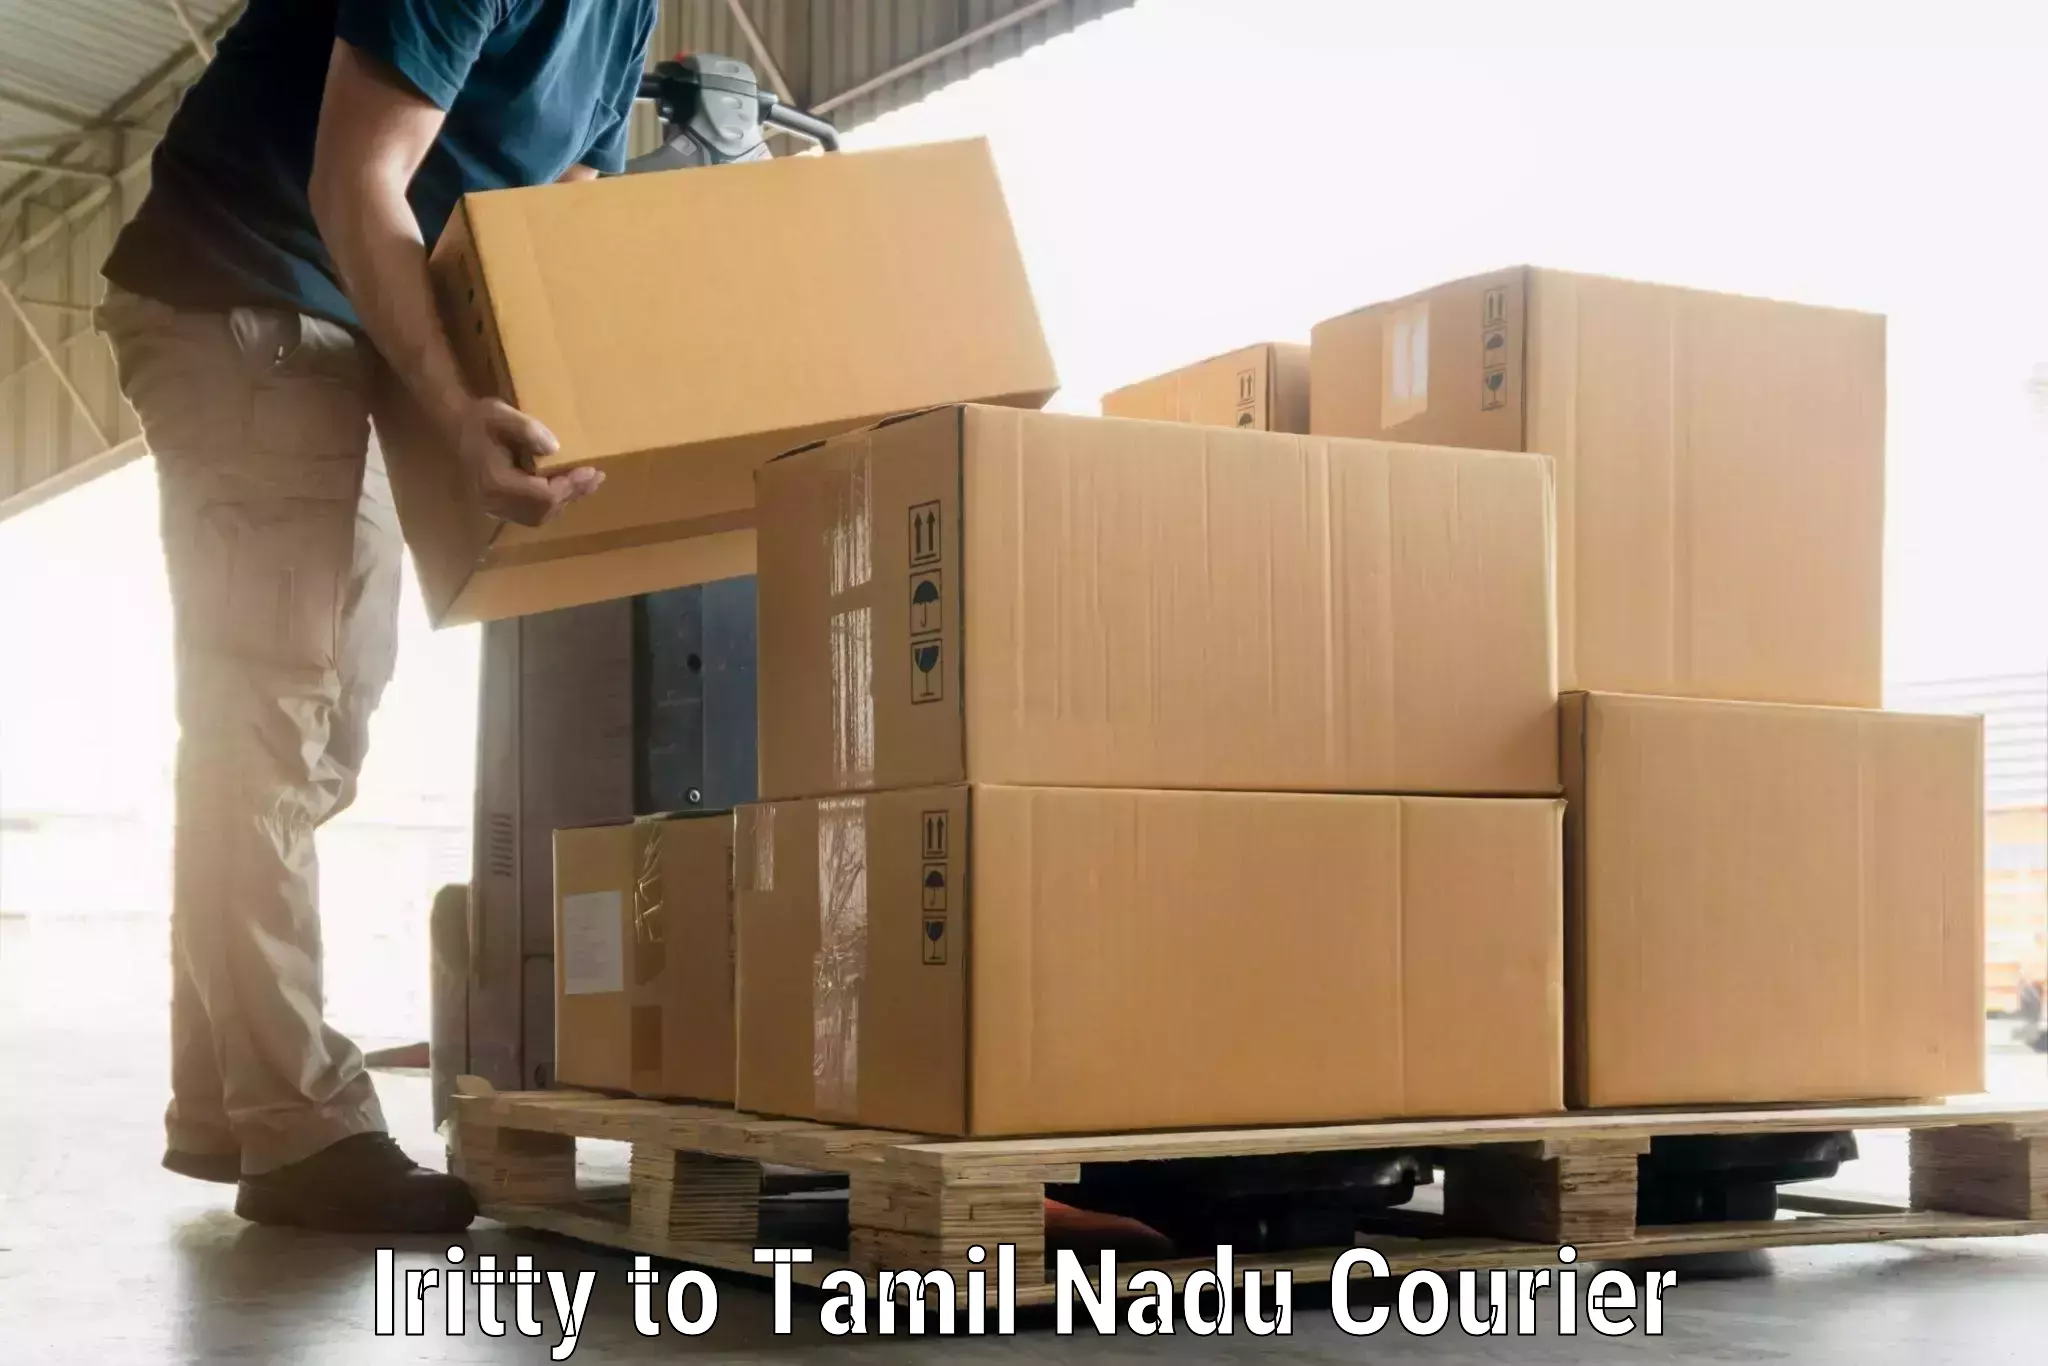 Luggage shipment specialists Iritty to Tamil Nadu